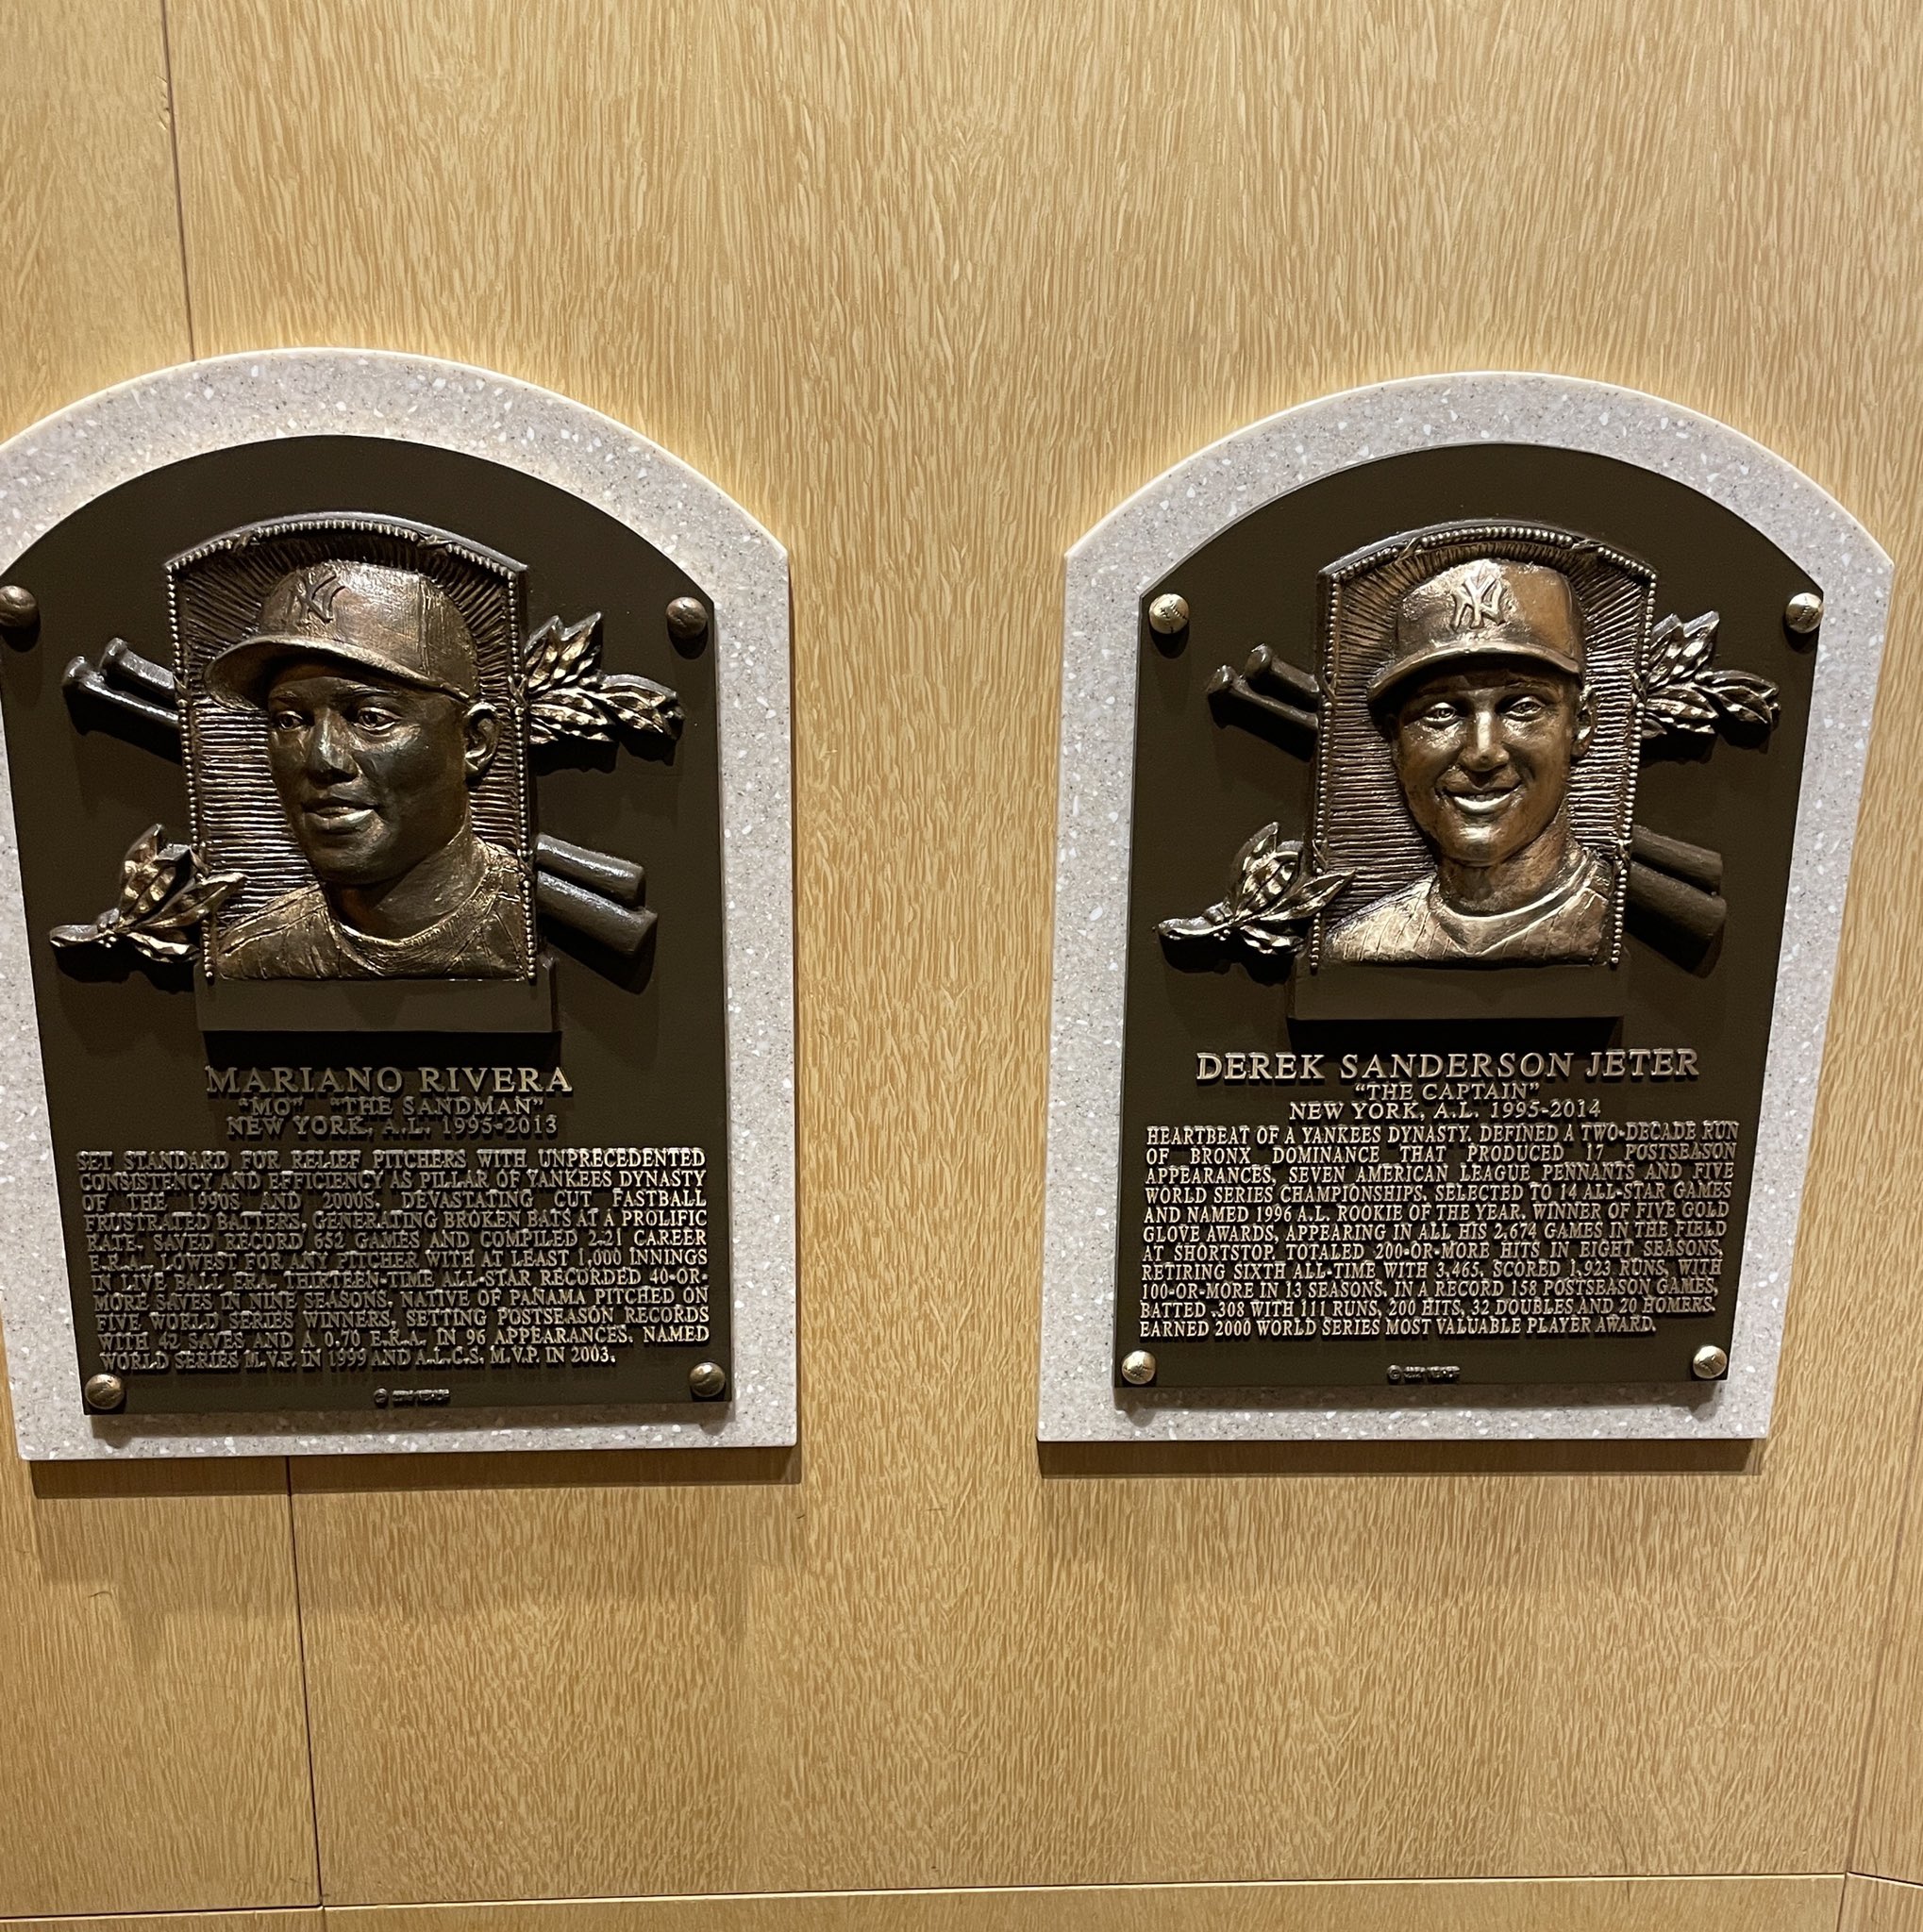 Yankees Videos on X: Derek Jeter's Hall of Fame plaque has been